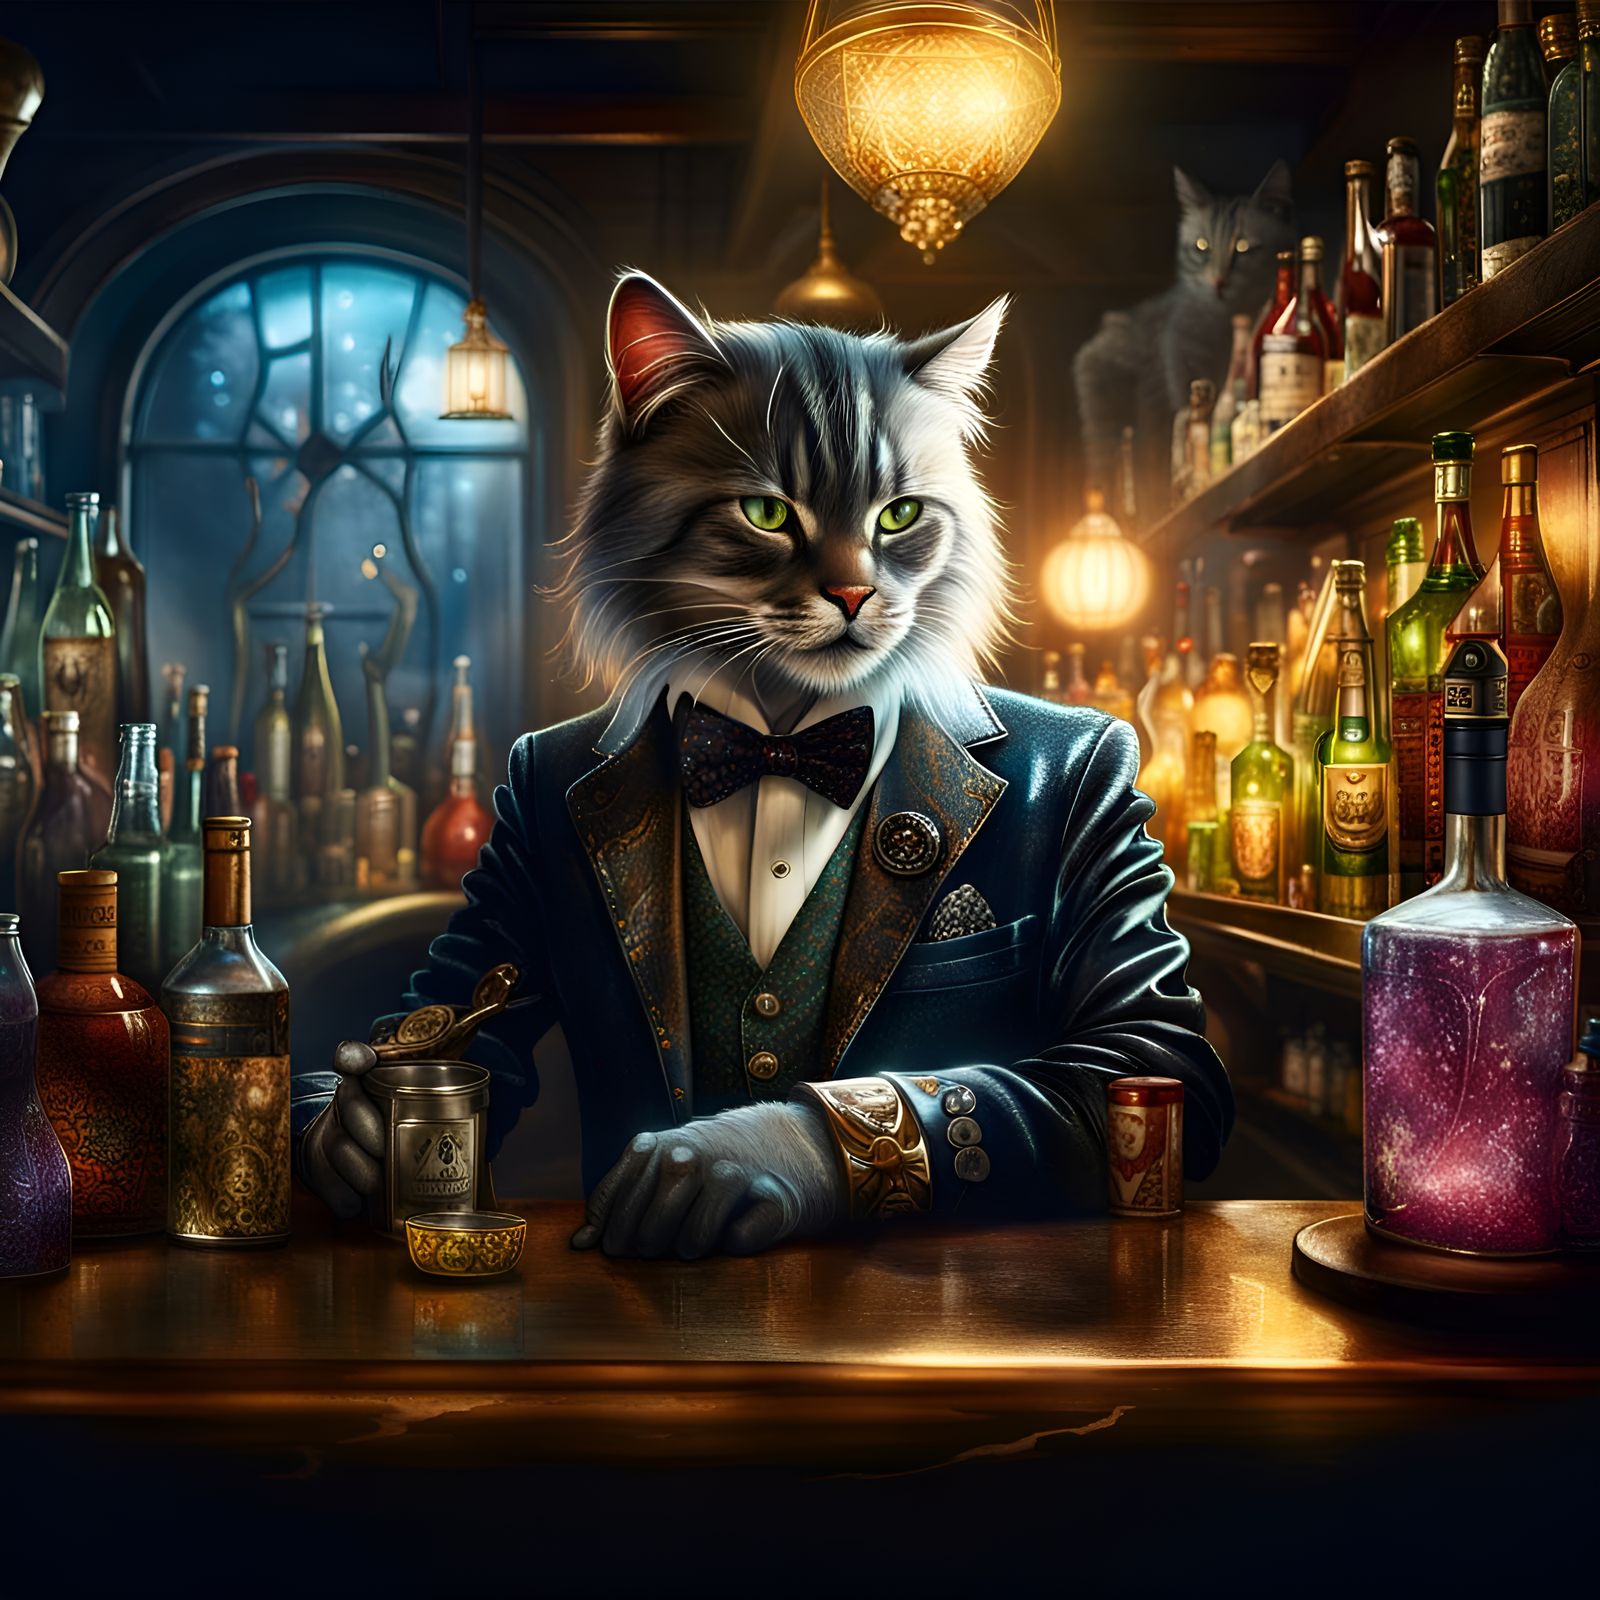 Sir Cattington the Bartender